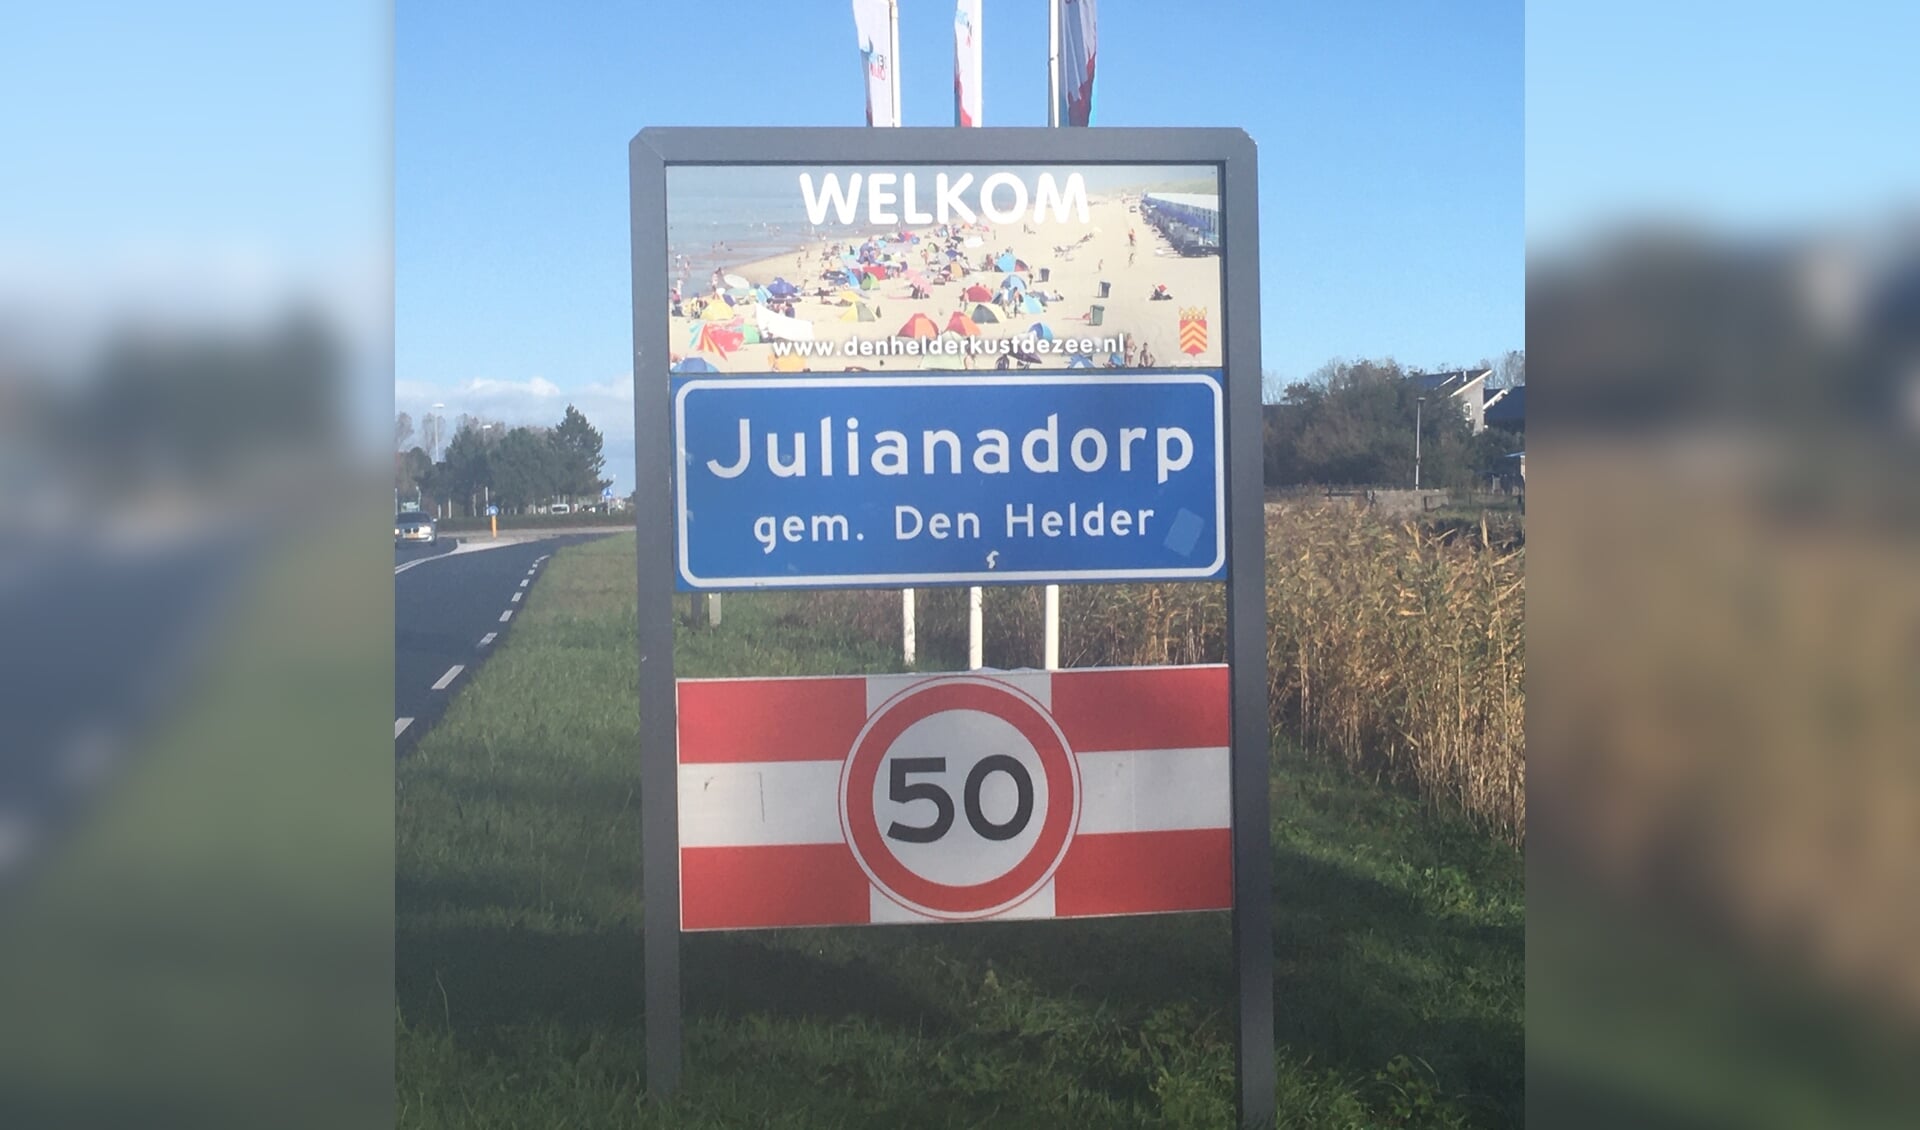 Julianadorp is geselecteerd.